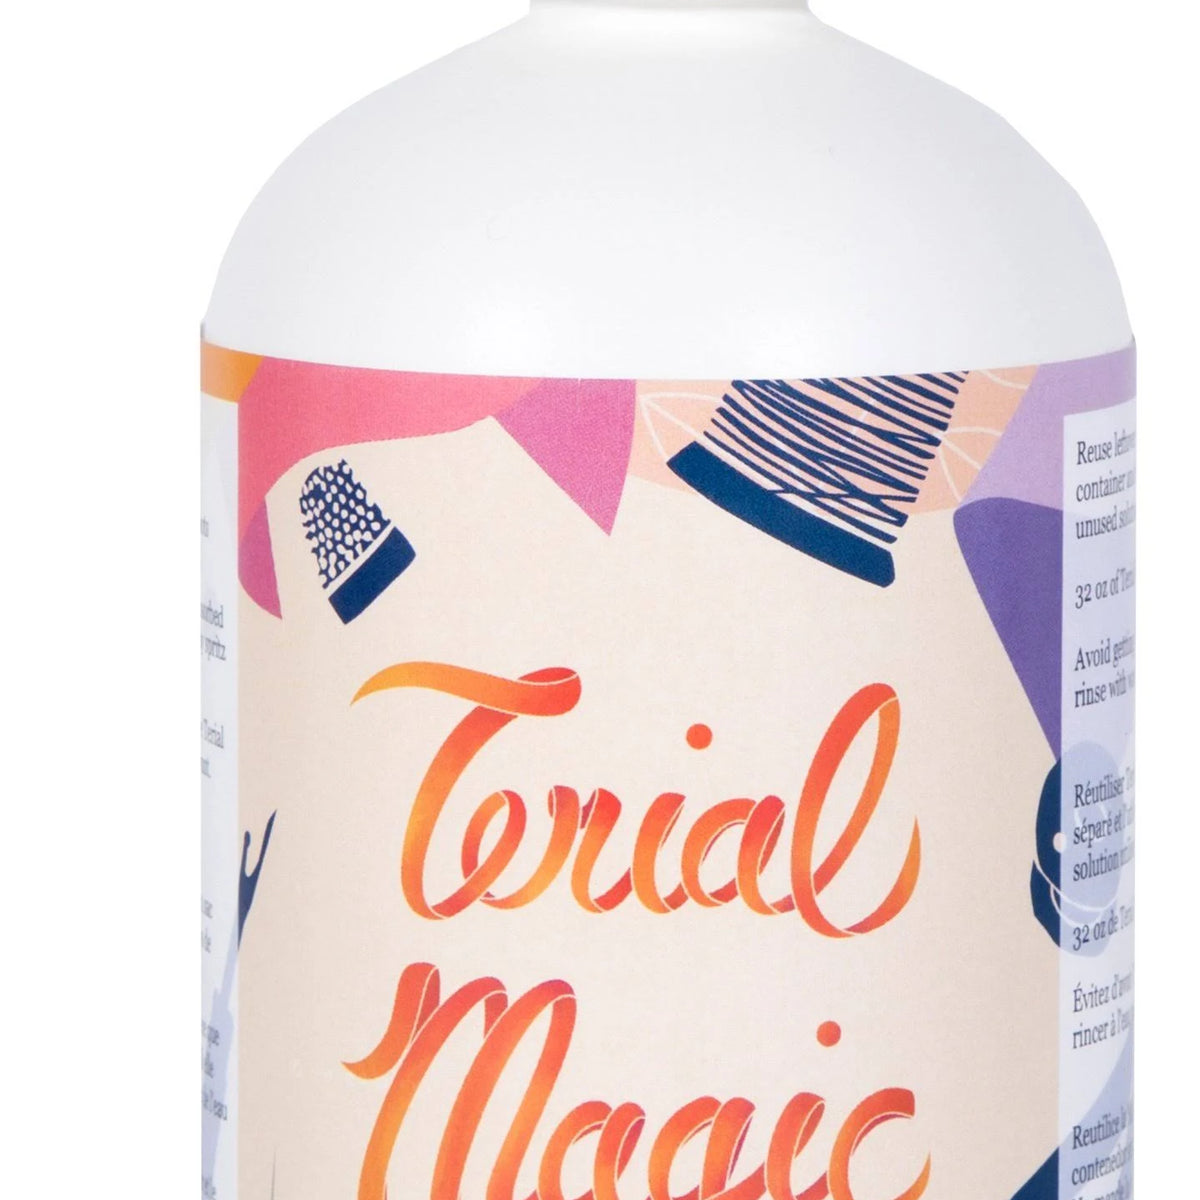 eQuilter Terial Magic - Liquid Fabric Stabilizer